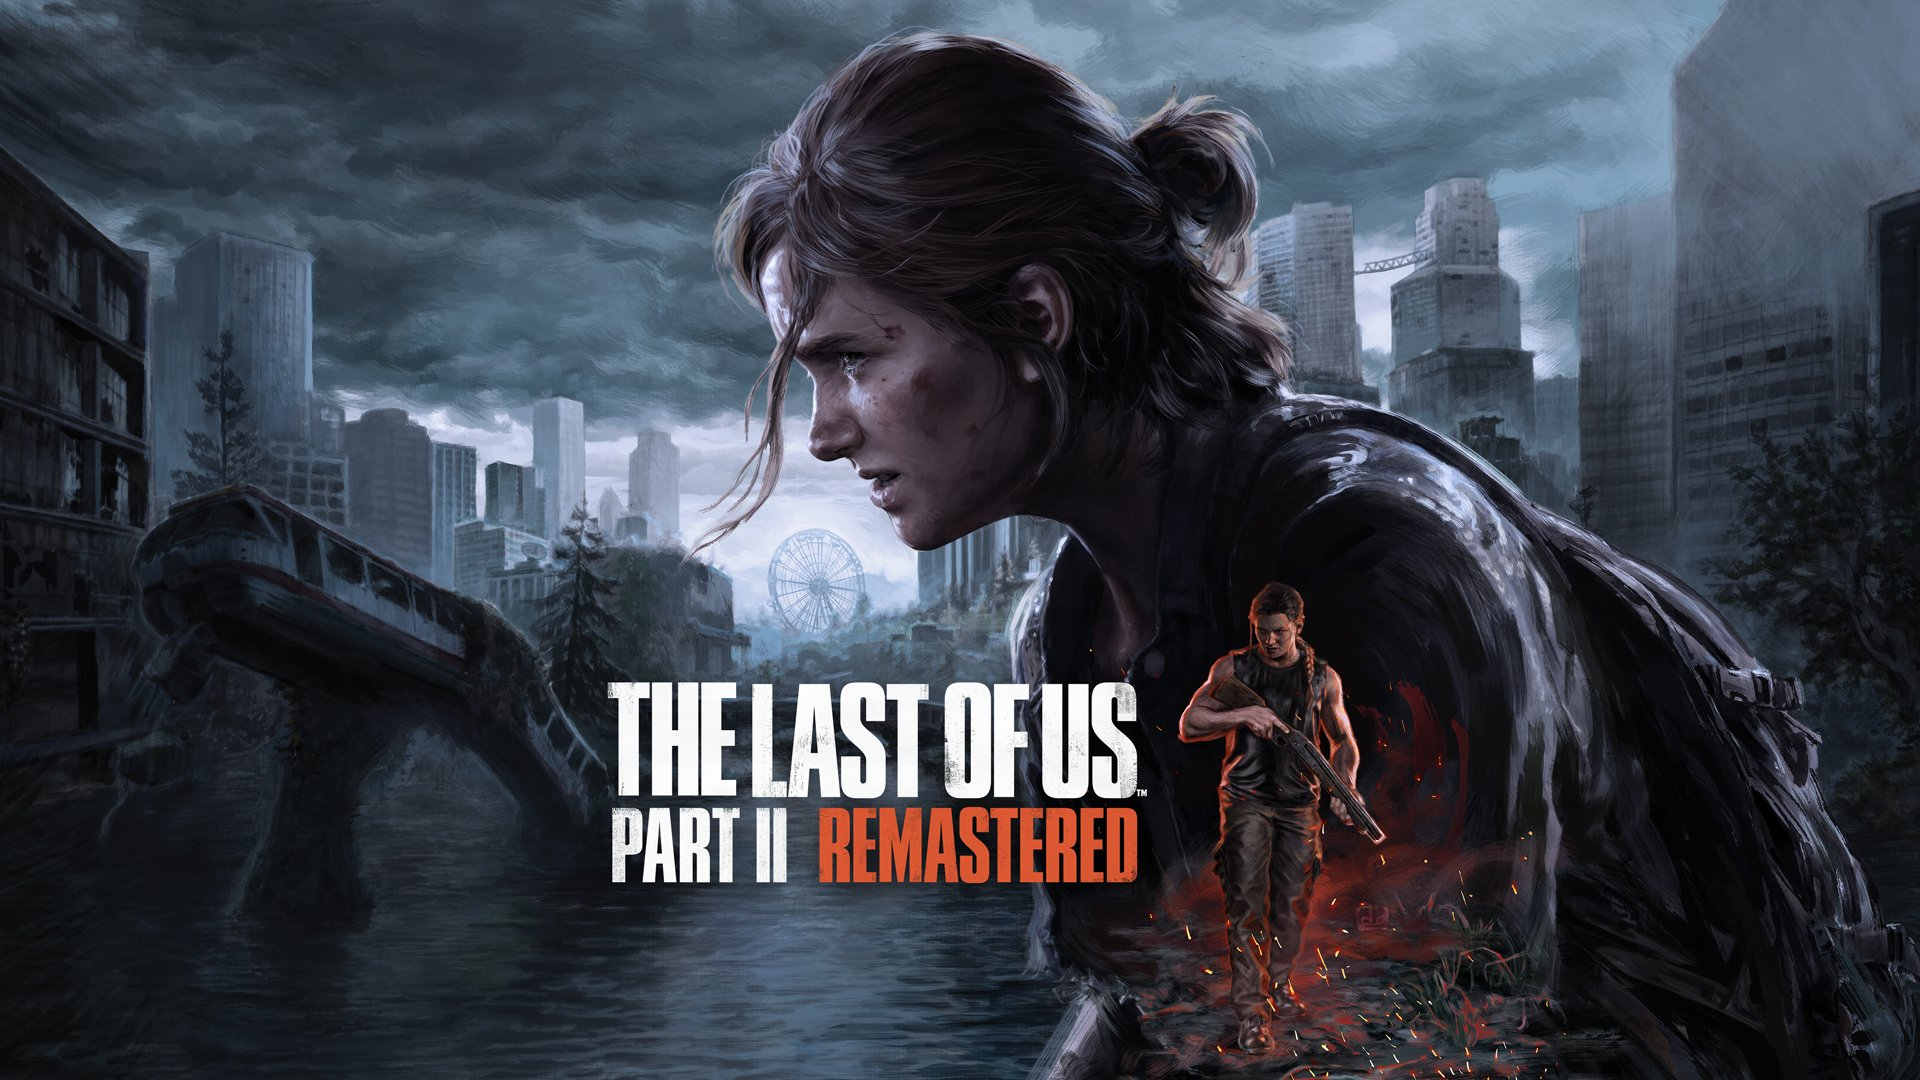 Director de The Last of Us Part II defiende su remastered | #TuDosisGeek